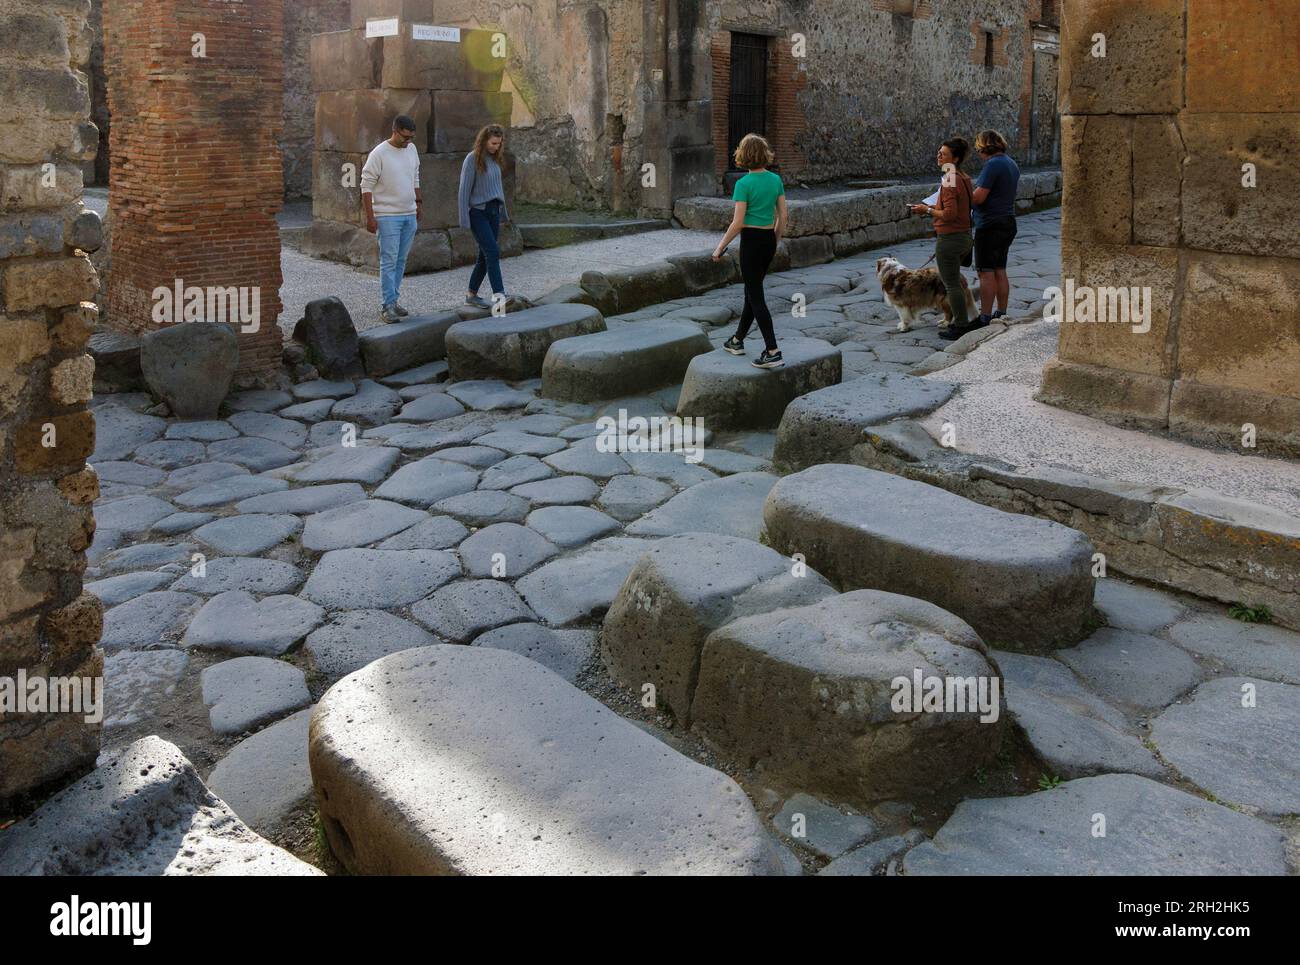 Ausgrabungsstätte Pompeji, Kampanien, Italien. Treppensteine auf der anderen Straßenseite. Pompeji, Herculaneum und Torre Annunziata werden gemeinsam als A bezeichnet Stockfoto